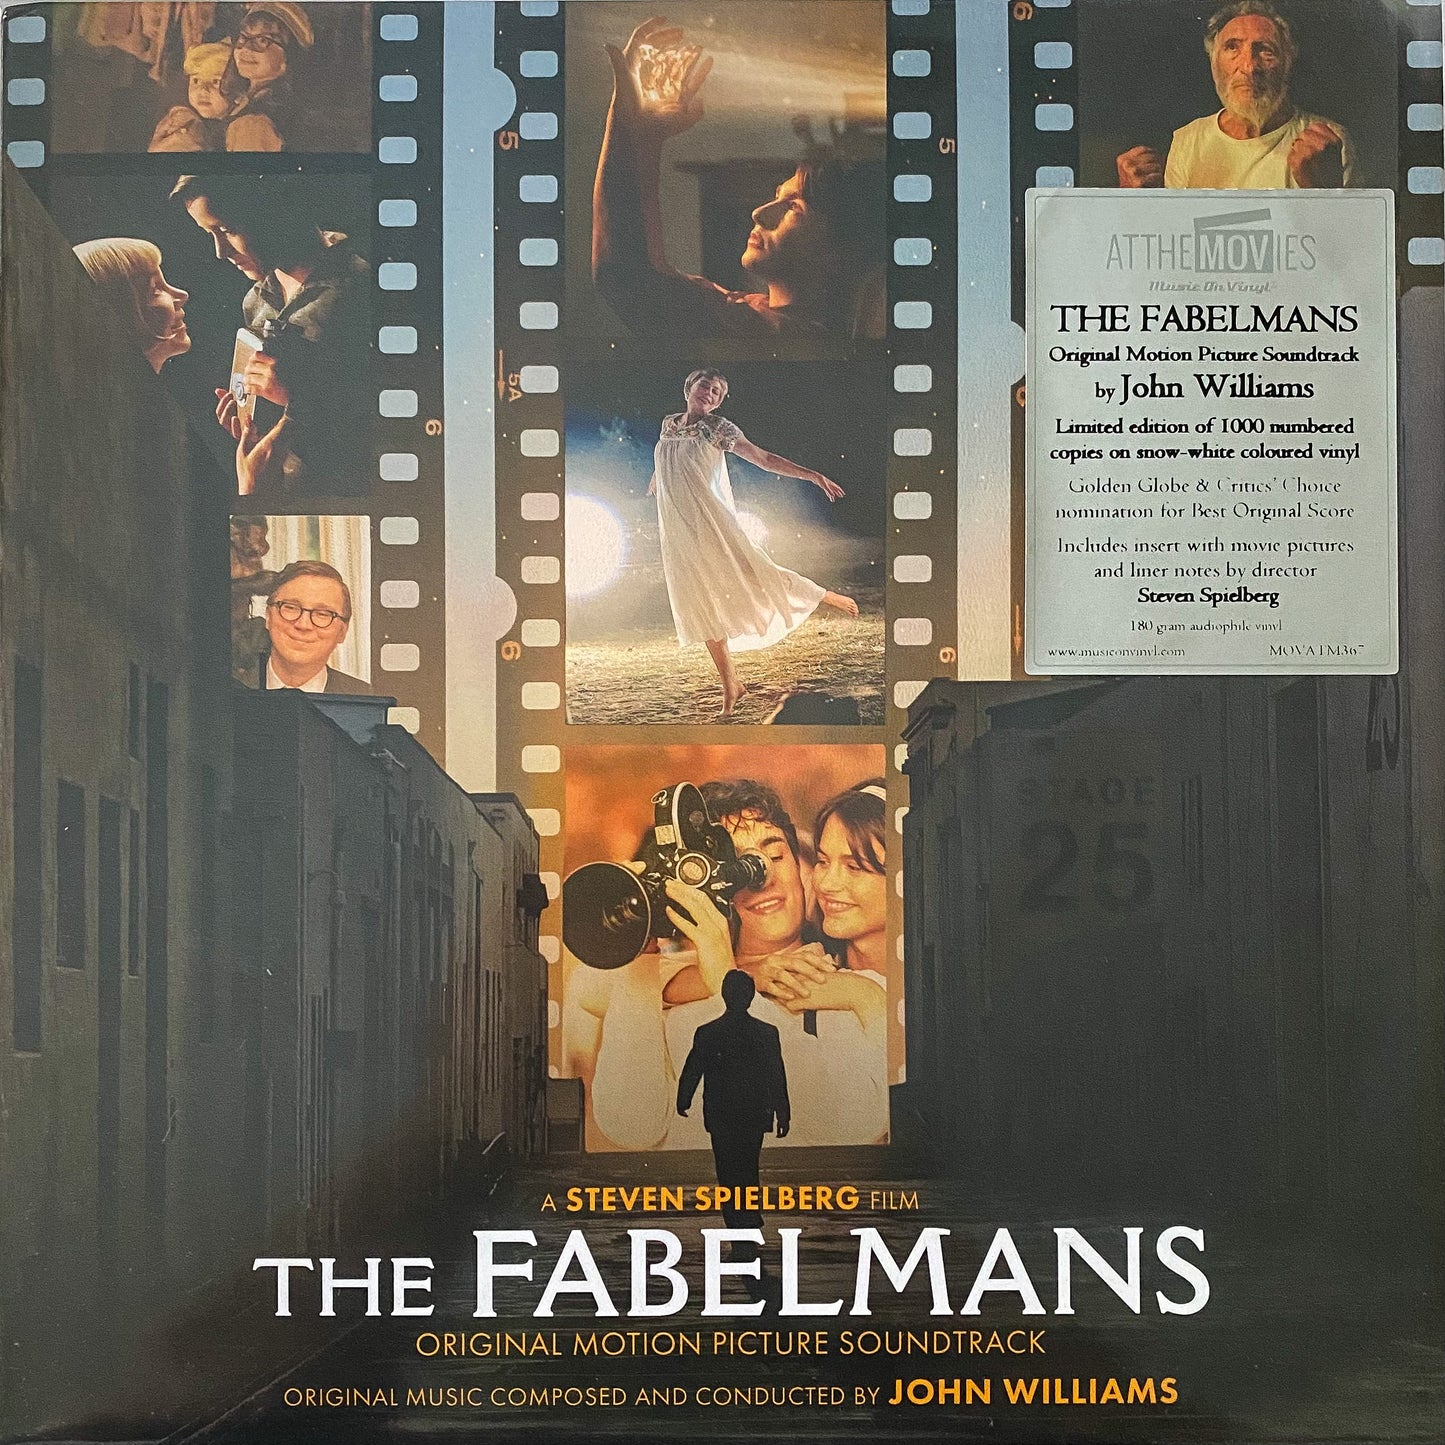 The Fabelmans: Original Motion Picture Soundtrack (Limited Edition 'Snow White' Vinyl)